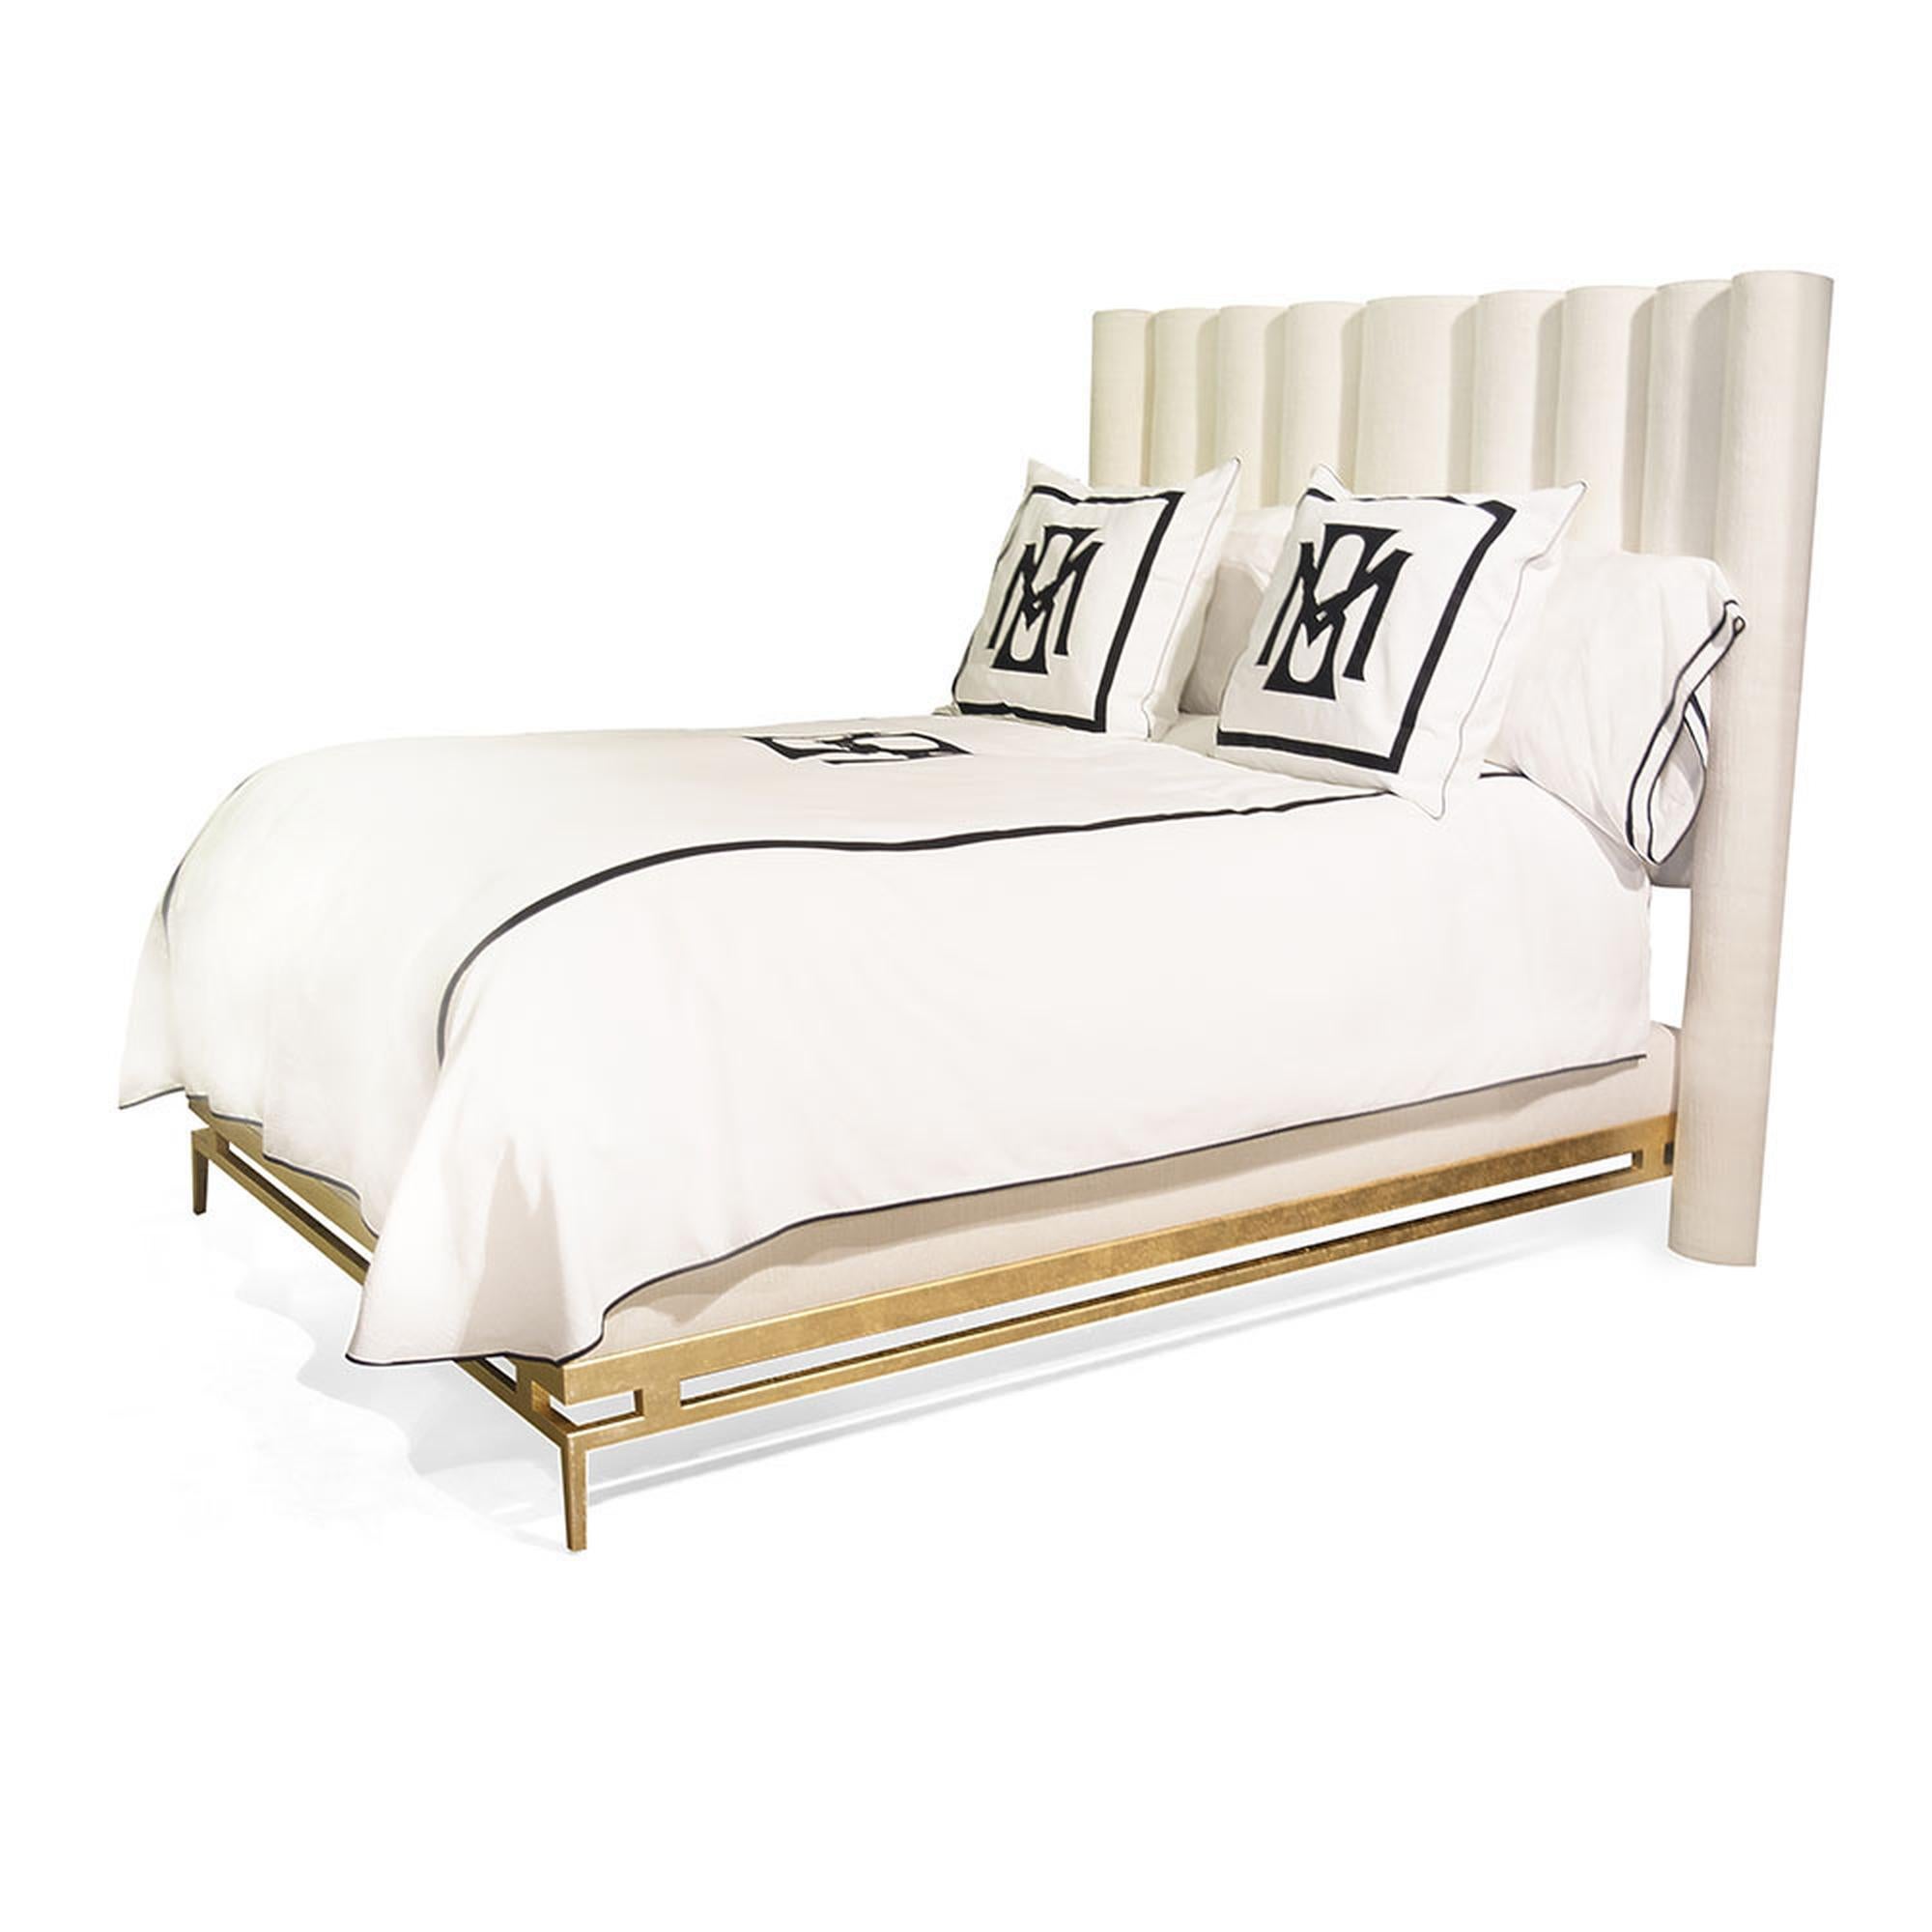 Das Catalina-Bett ist ein wahrer Traum. Mit seiner gepolsterten Plattform und dem vertikal getufteten Kopfteil bringt das einzigartige Design eine moderne und zugleich entspannte Eleganz in jedes Schlafzimmer. Der Metallrahmen und die Beine stützen